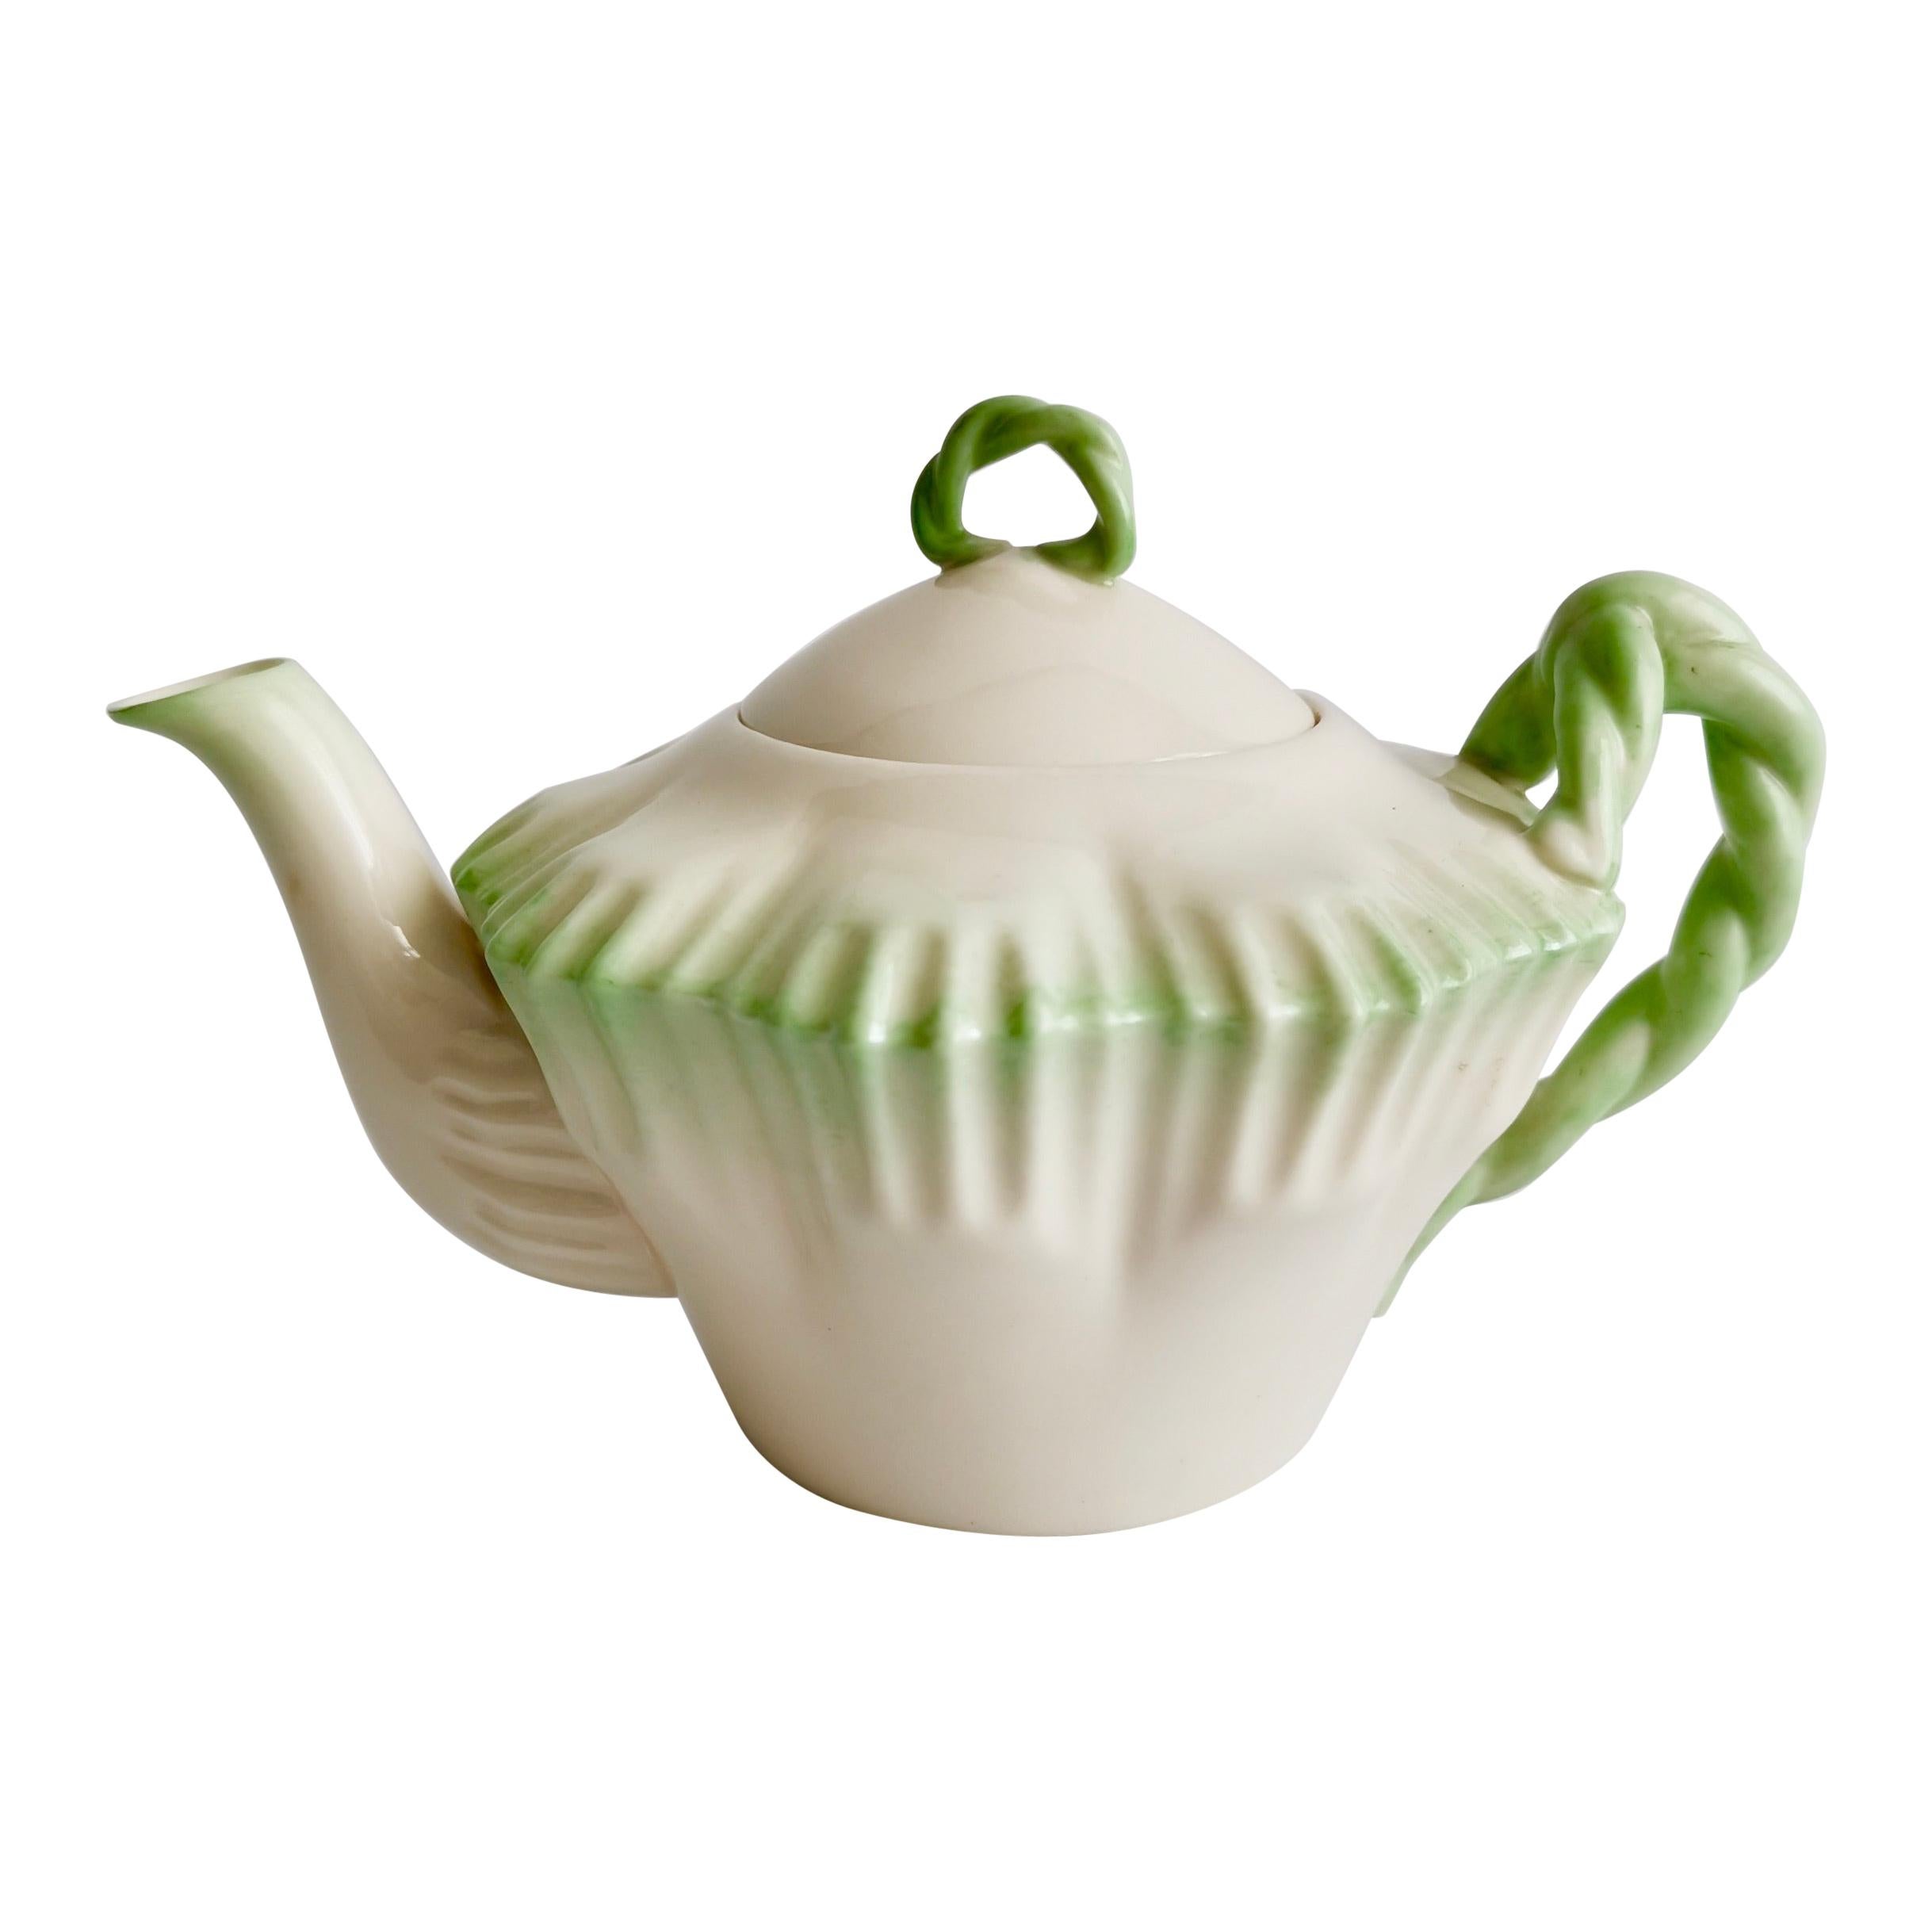 Parian Porcelain Teapot, Belleek Green Hexagon Shape, 2nd BM 1891-1926